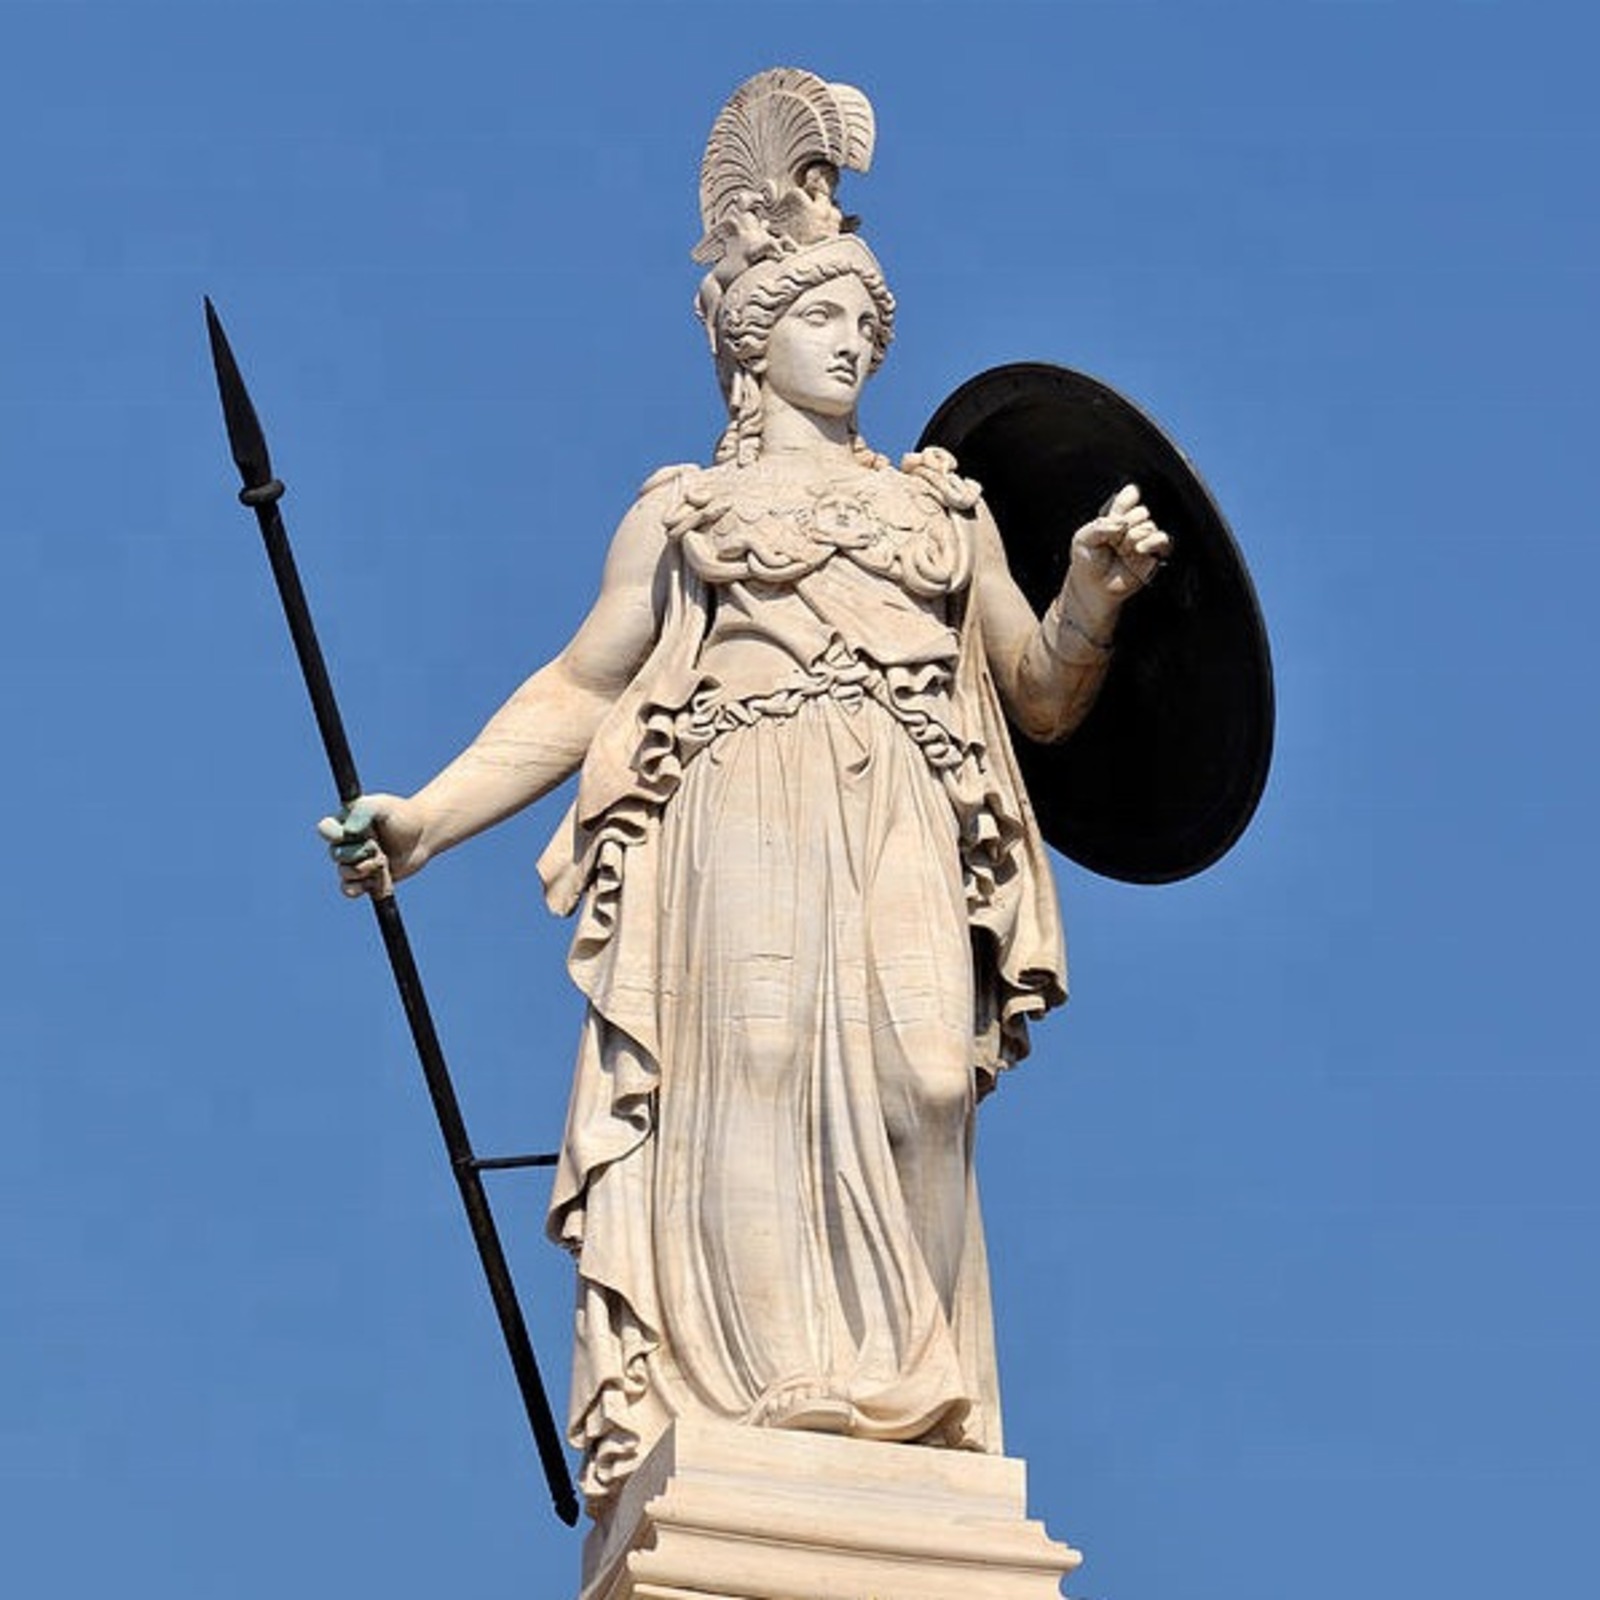 Минерва - древнеримская богиня мудрости и знаний, покровительница ремесленников, писателей, актёров, поэтов, художников, учителей, учащихся и врачей.